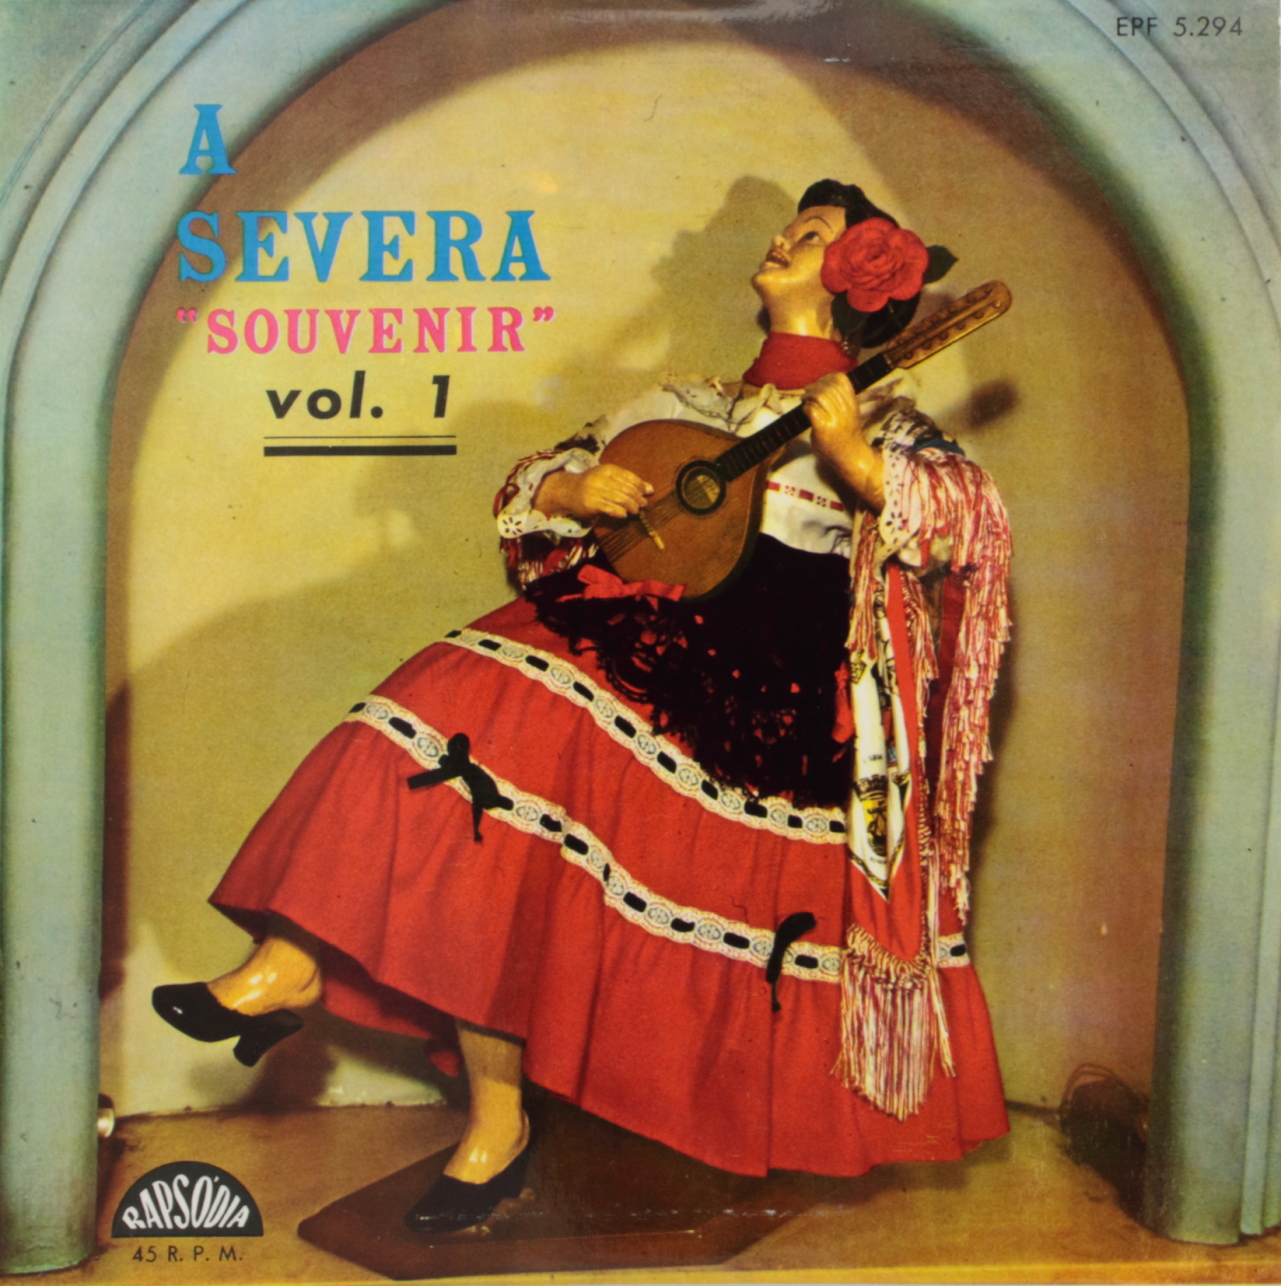 A Severa Souvenir vol. 1